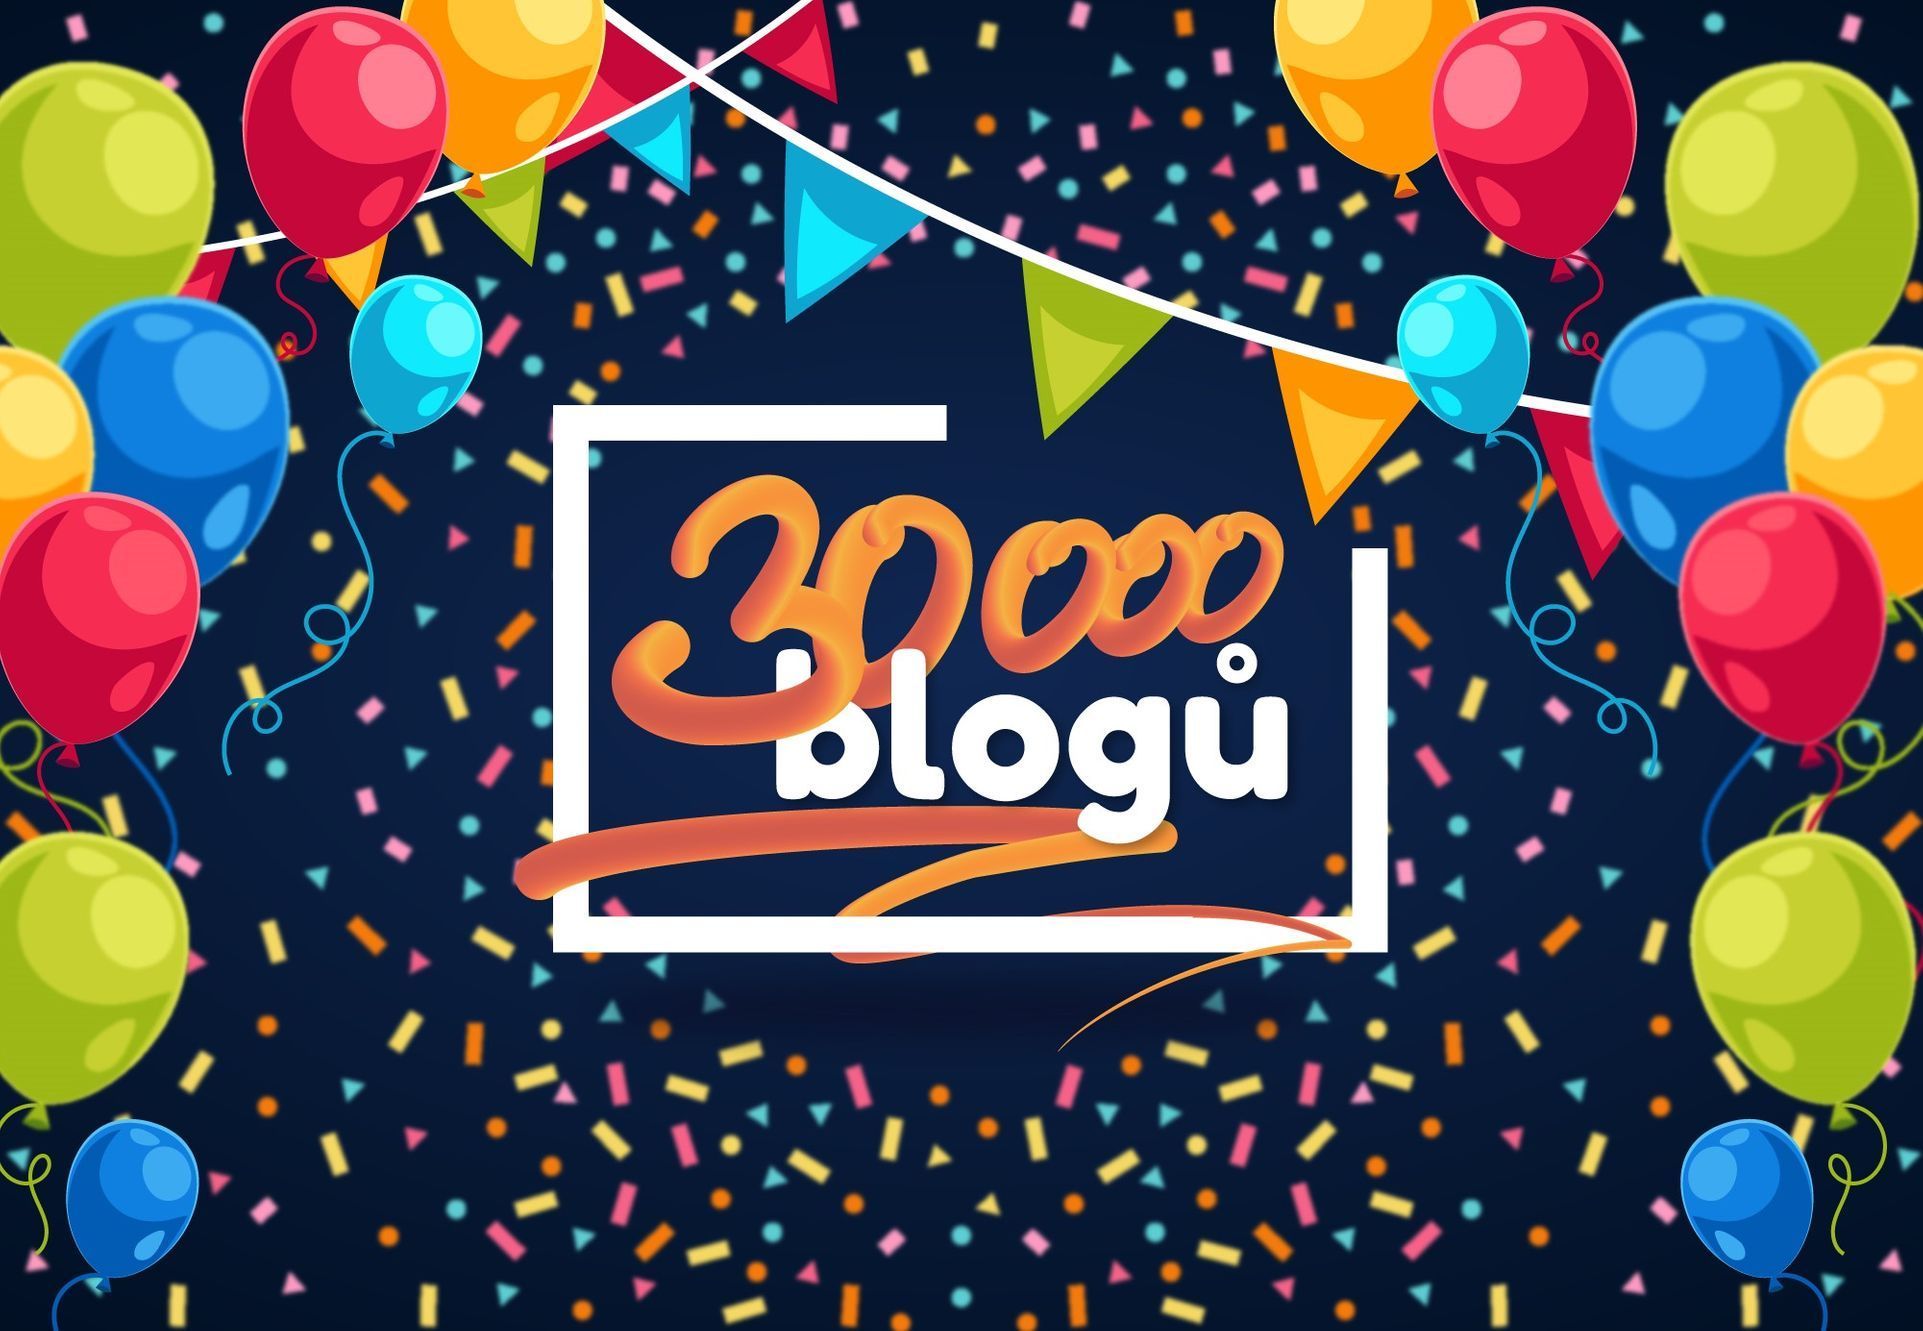 30 000 blogů